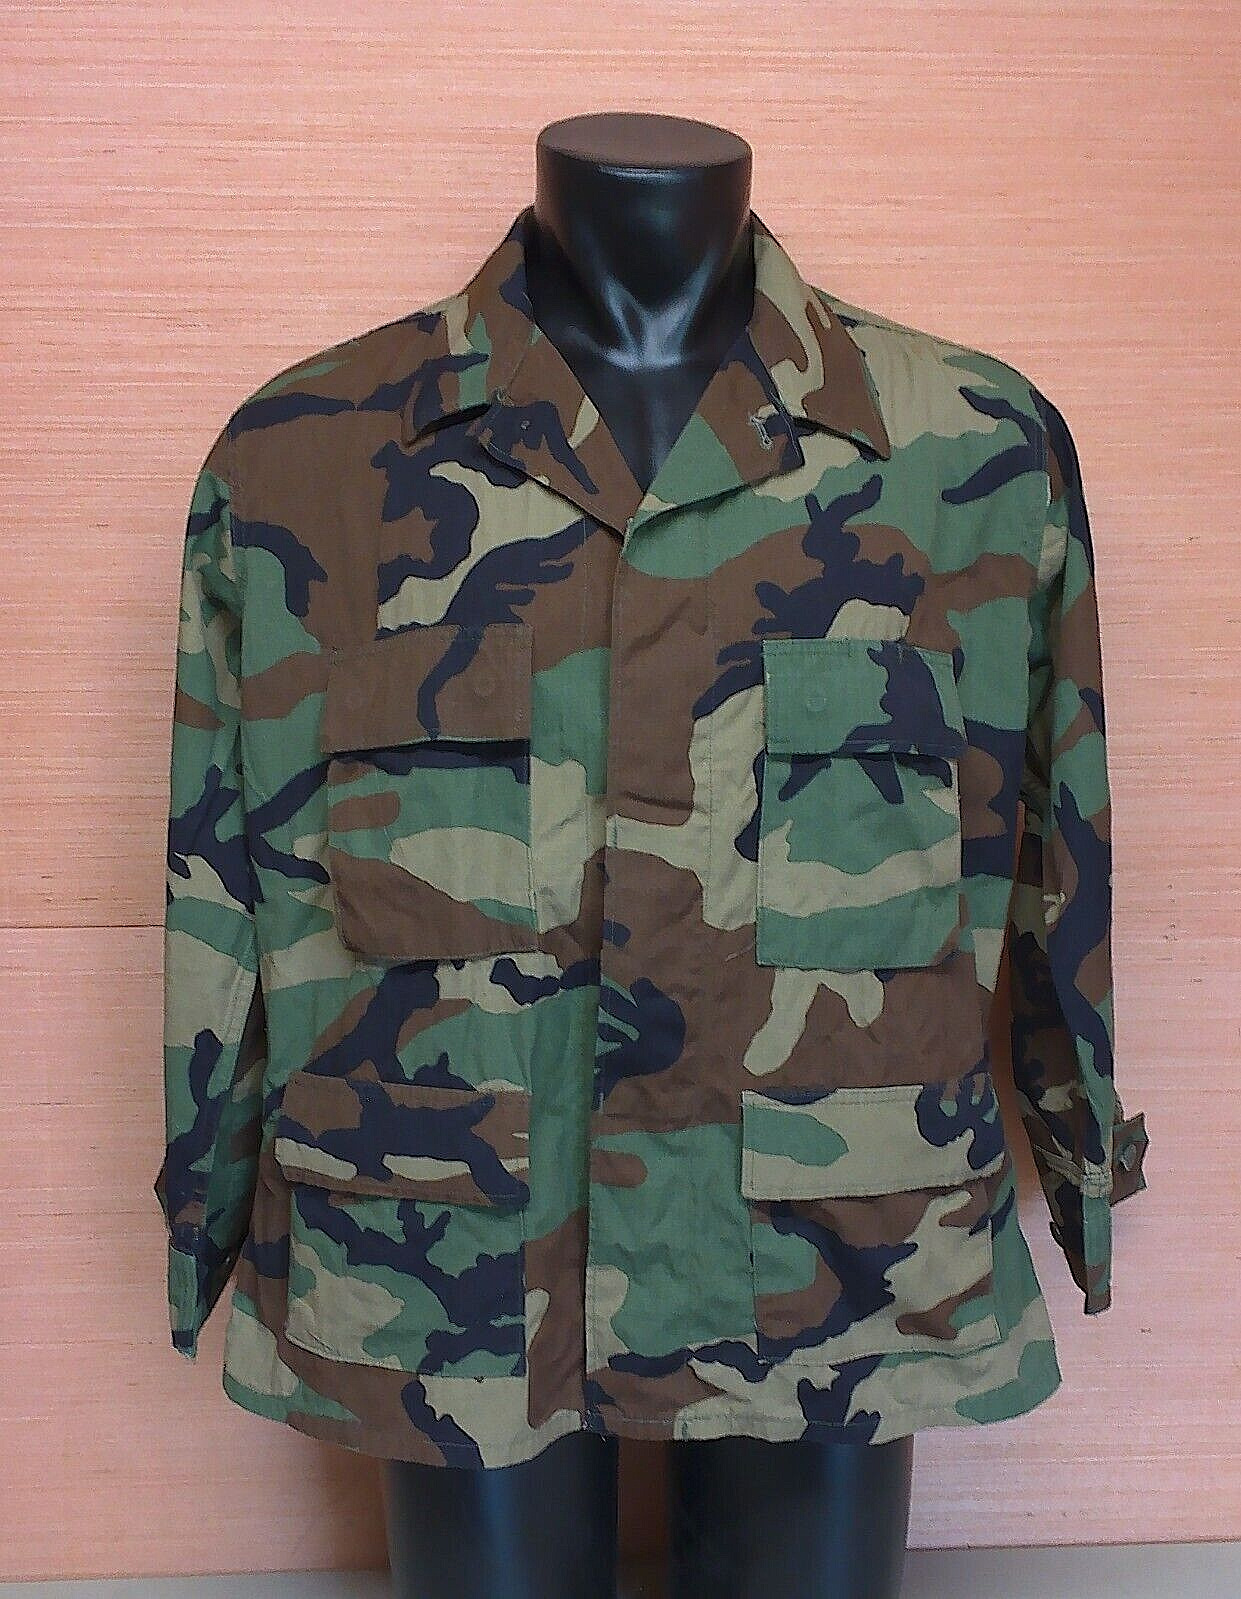 US Military Issue Woodland BDU Camouflage Jacket Coat Size Large X-Short